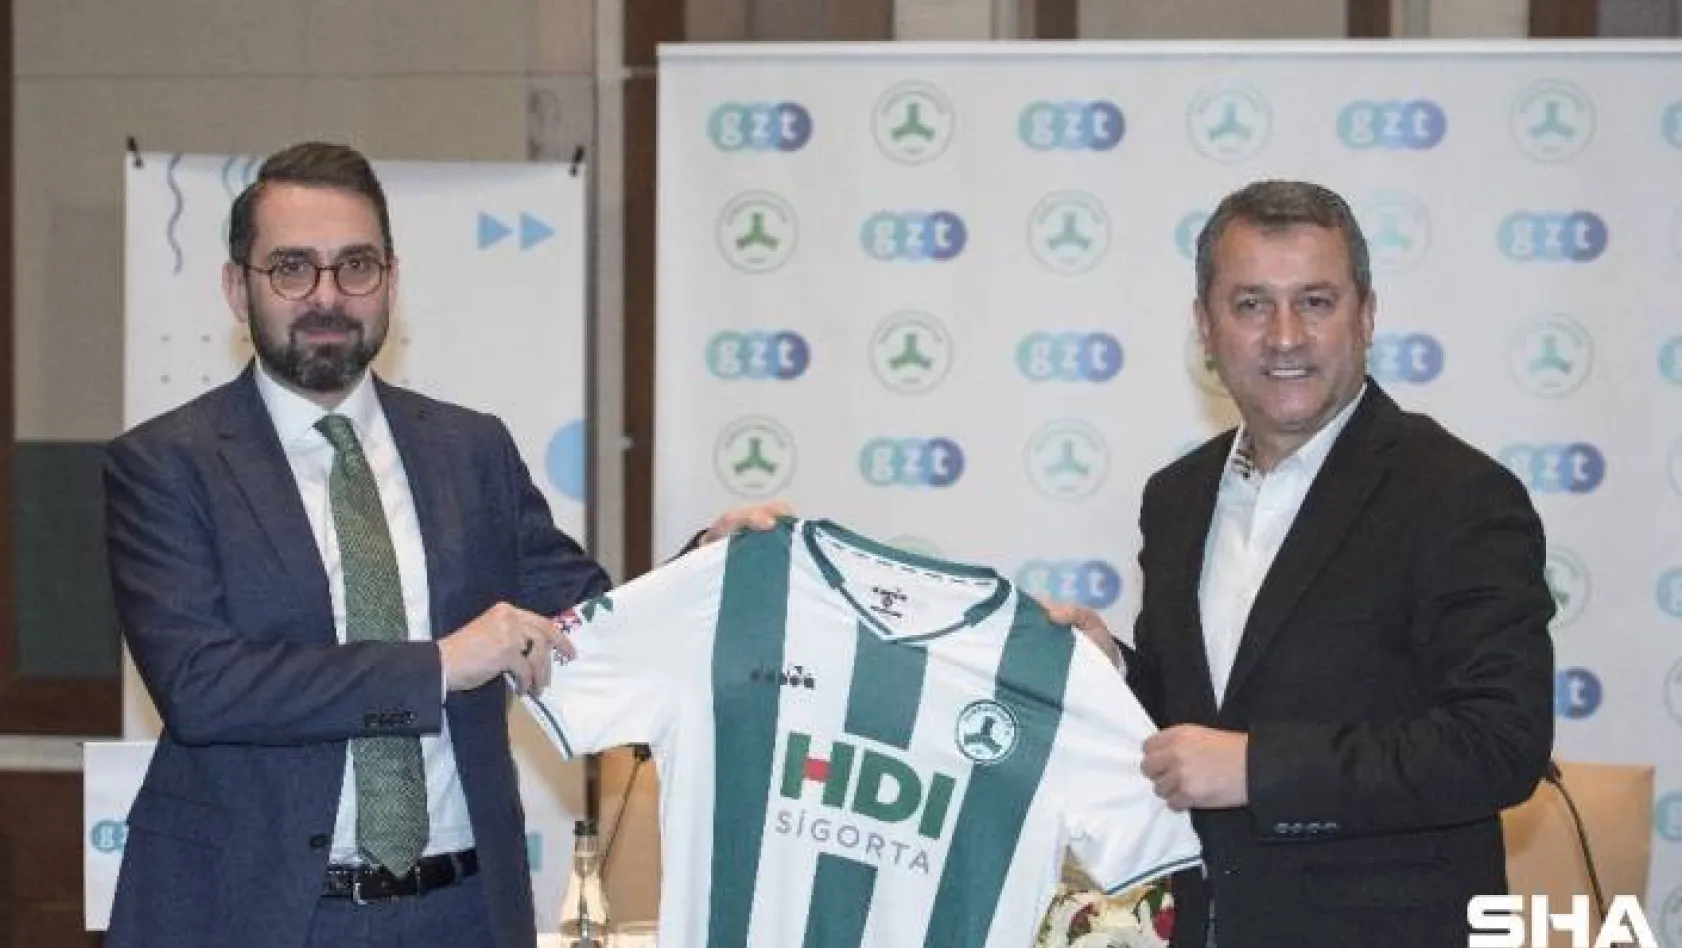 Giresunspor ile Albayrak Medya kuruluşu GZT isim sponsorluğu anlaşması imzaladı